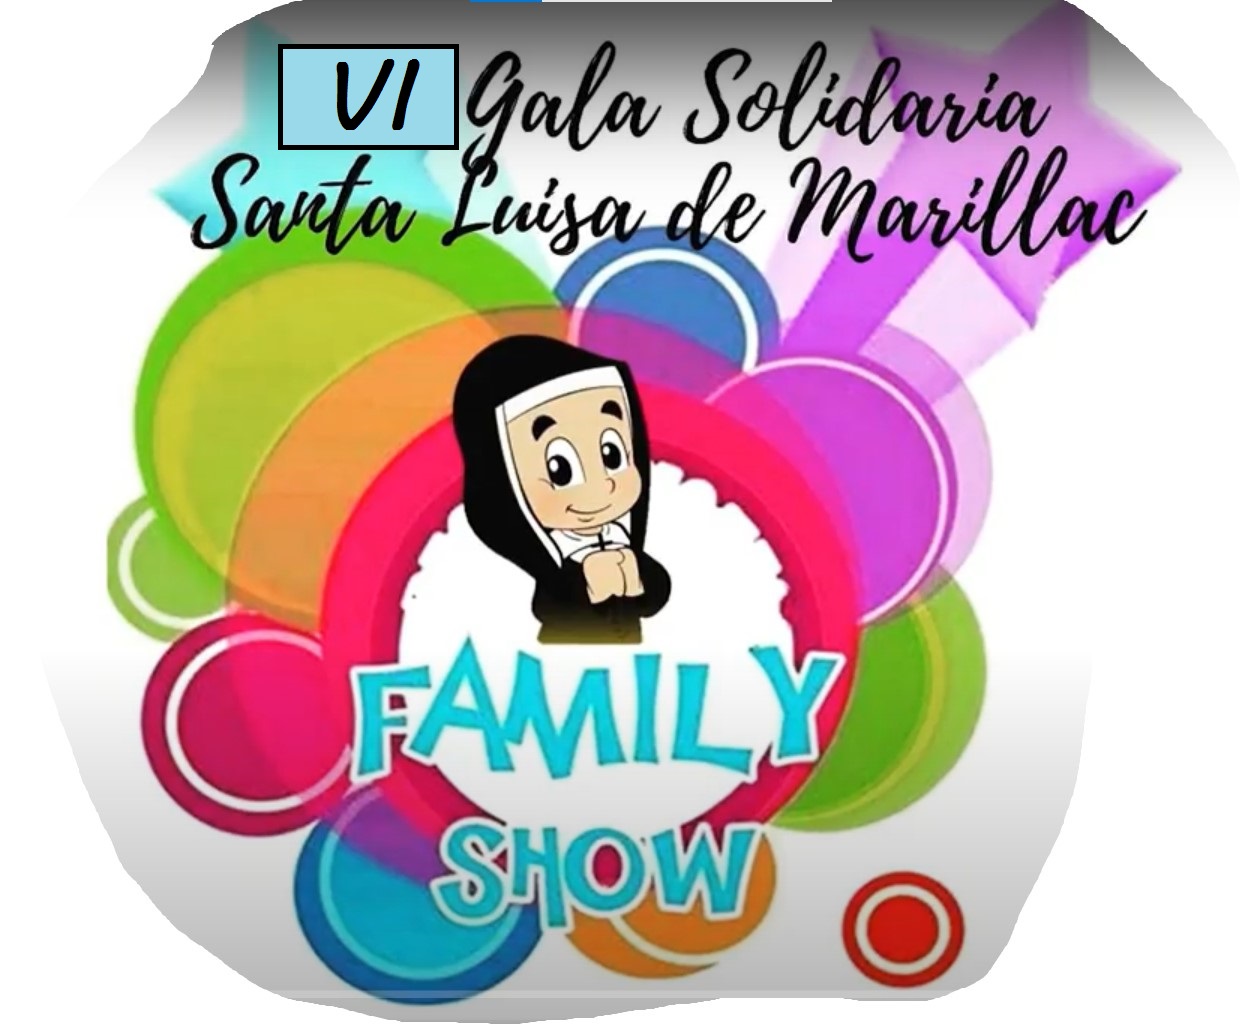 VI Gala solidaria Santa Luisa